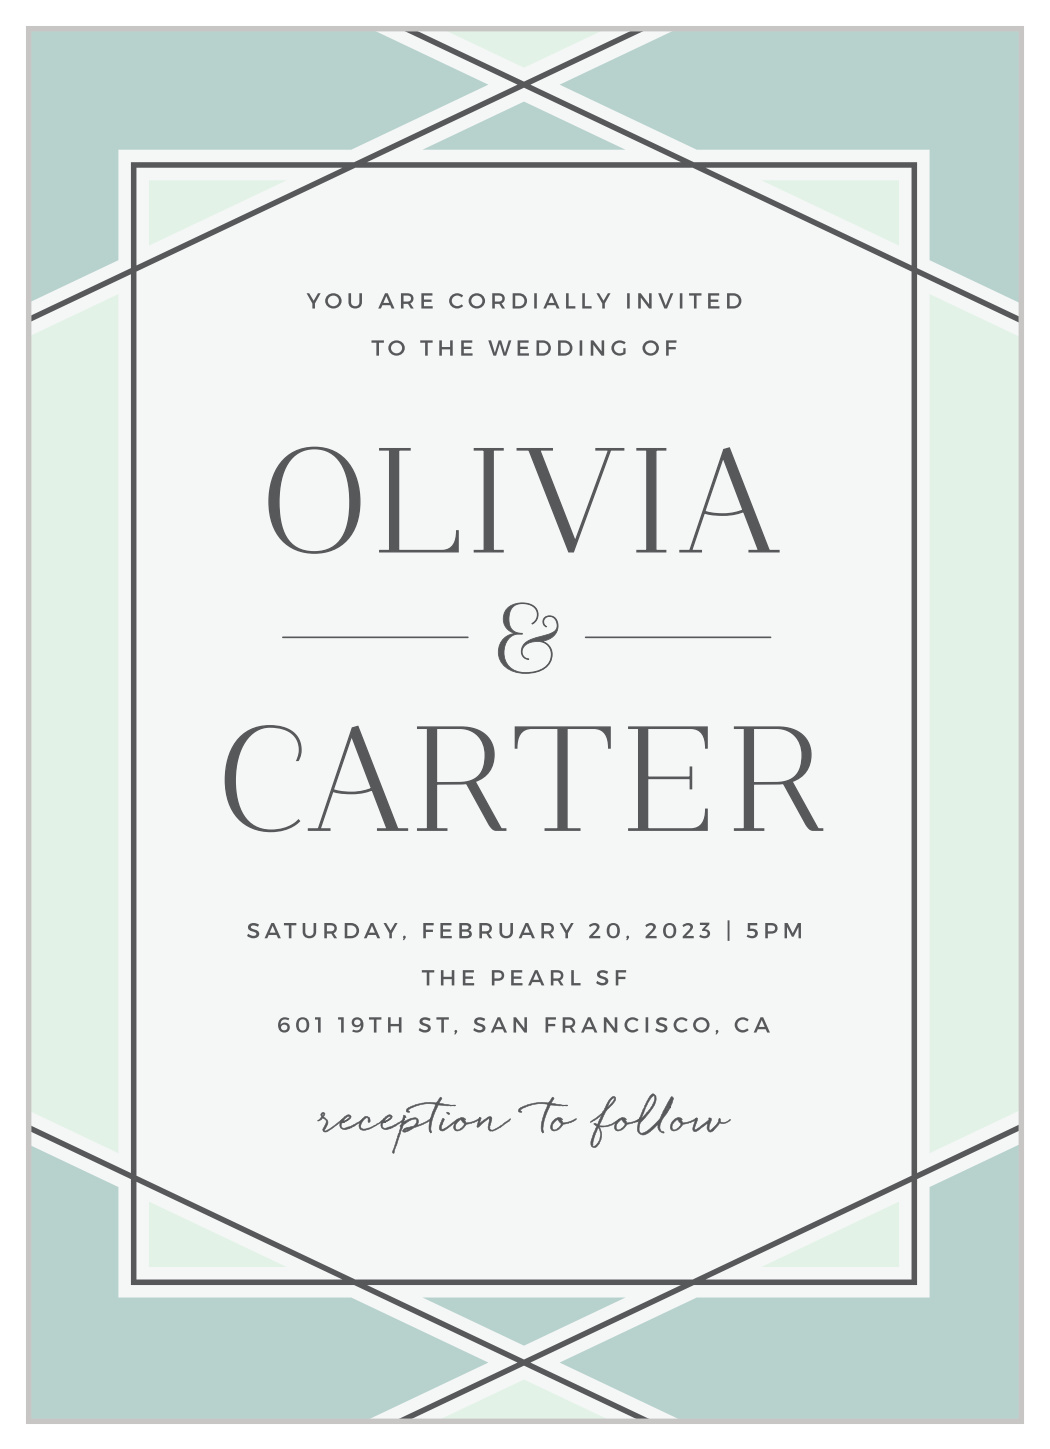 Simple Lines Wedding Invitations